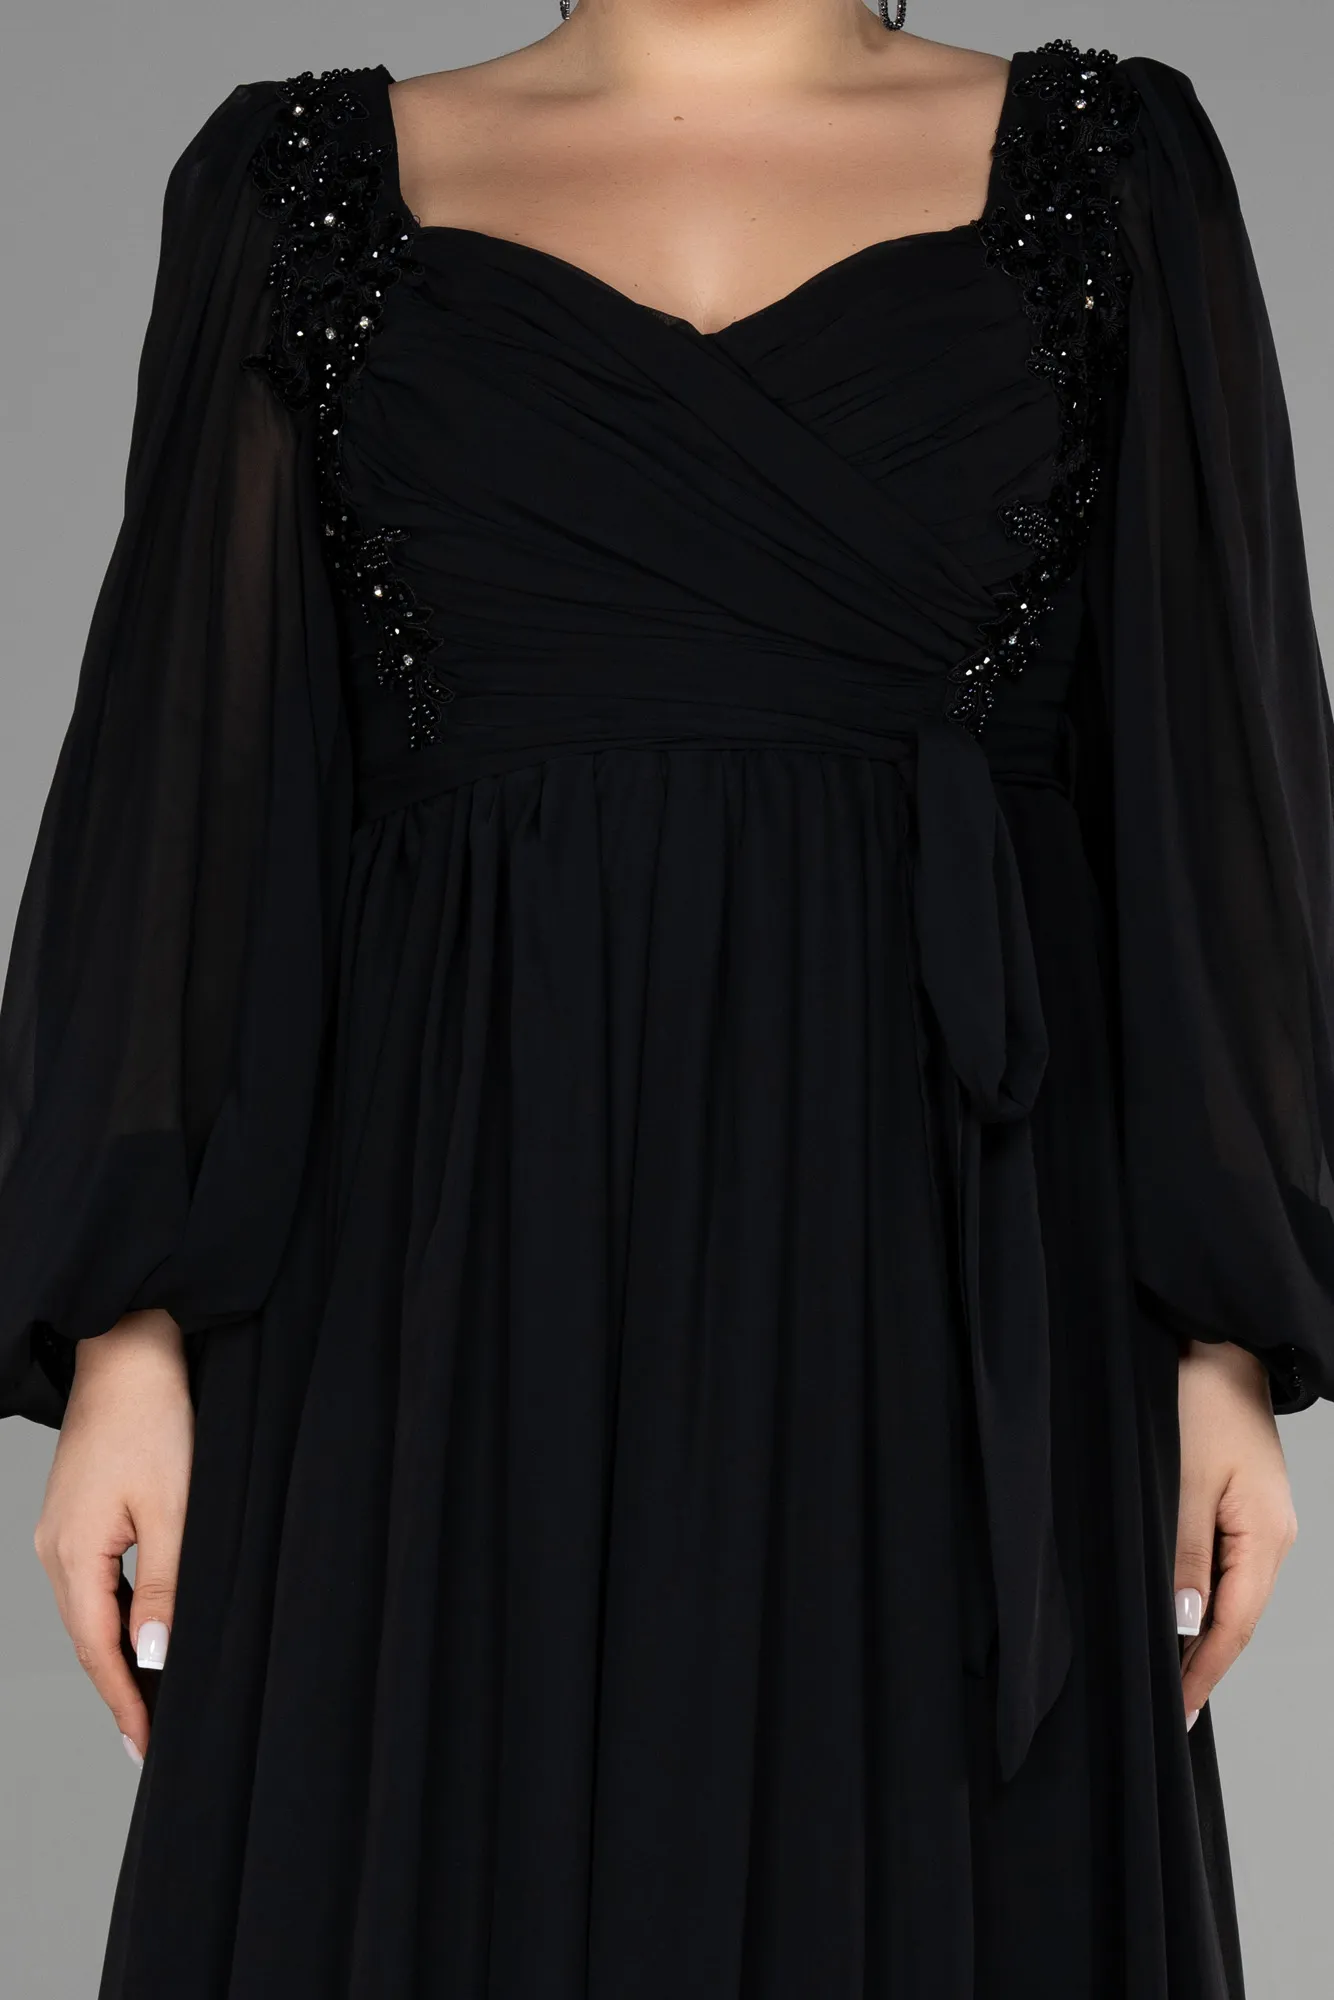 Black-Long Chiffon Plus Size Evening Dress ABU3244